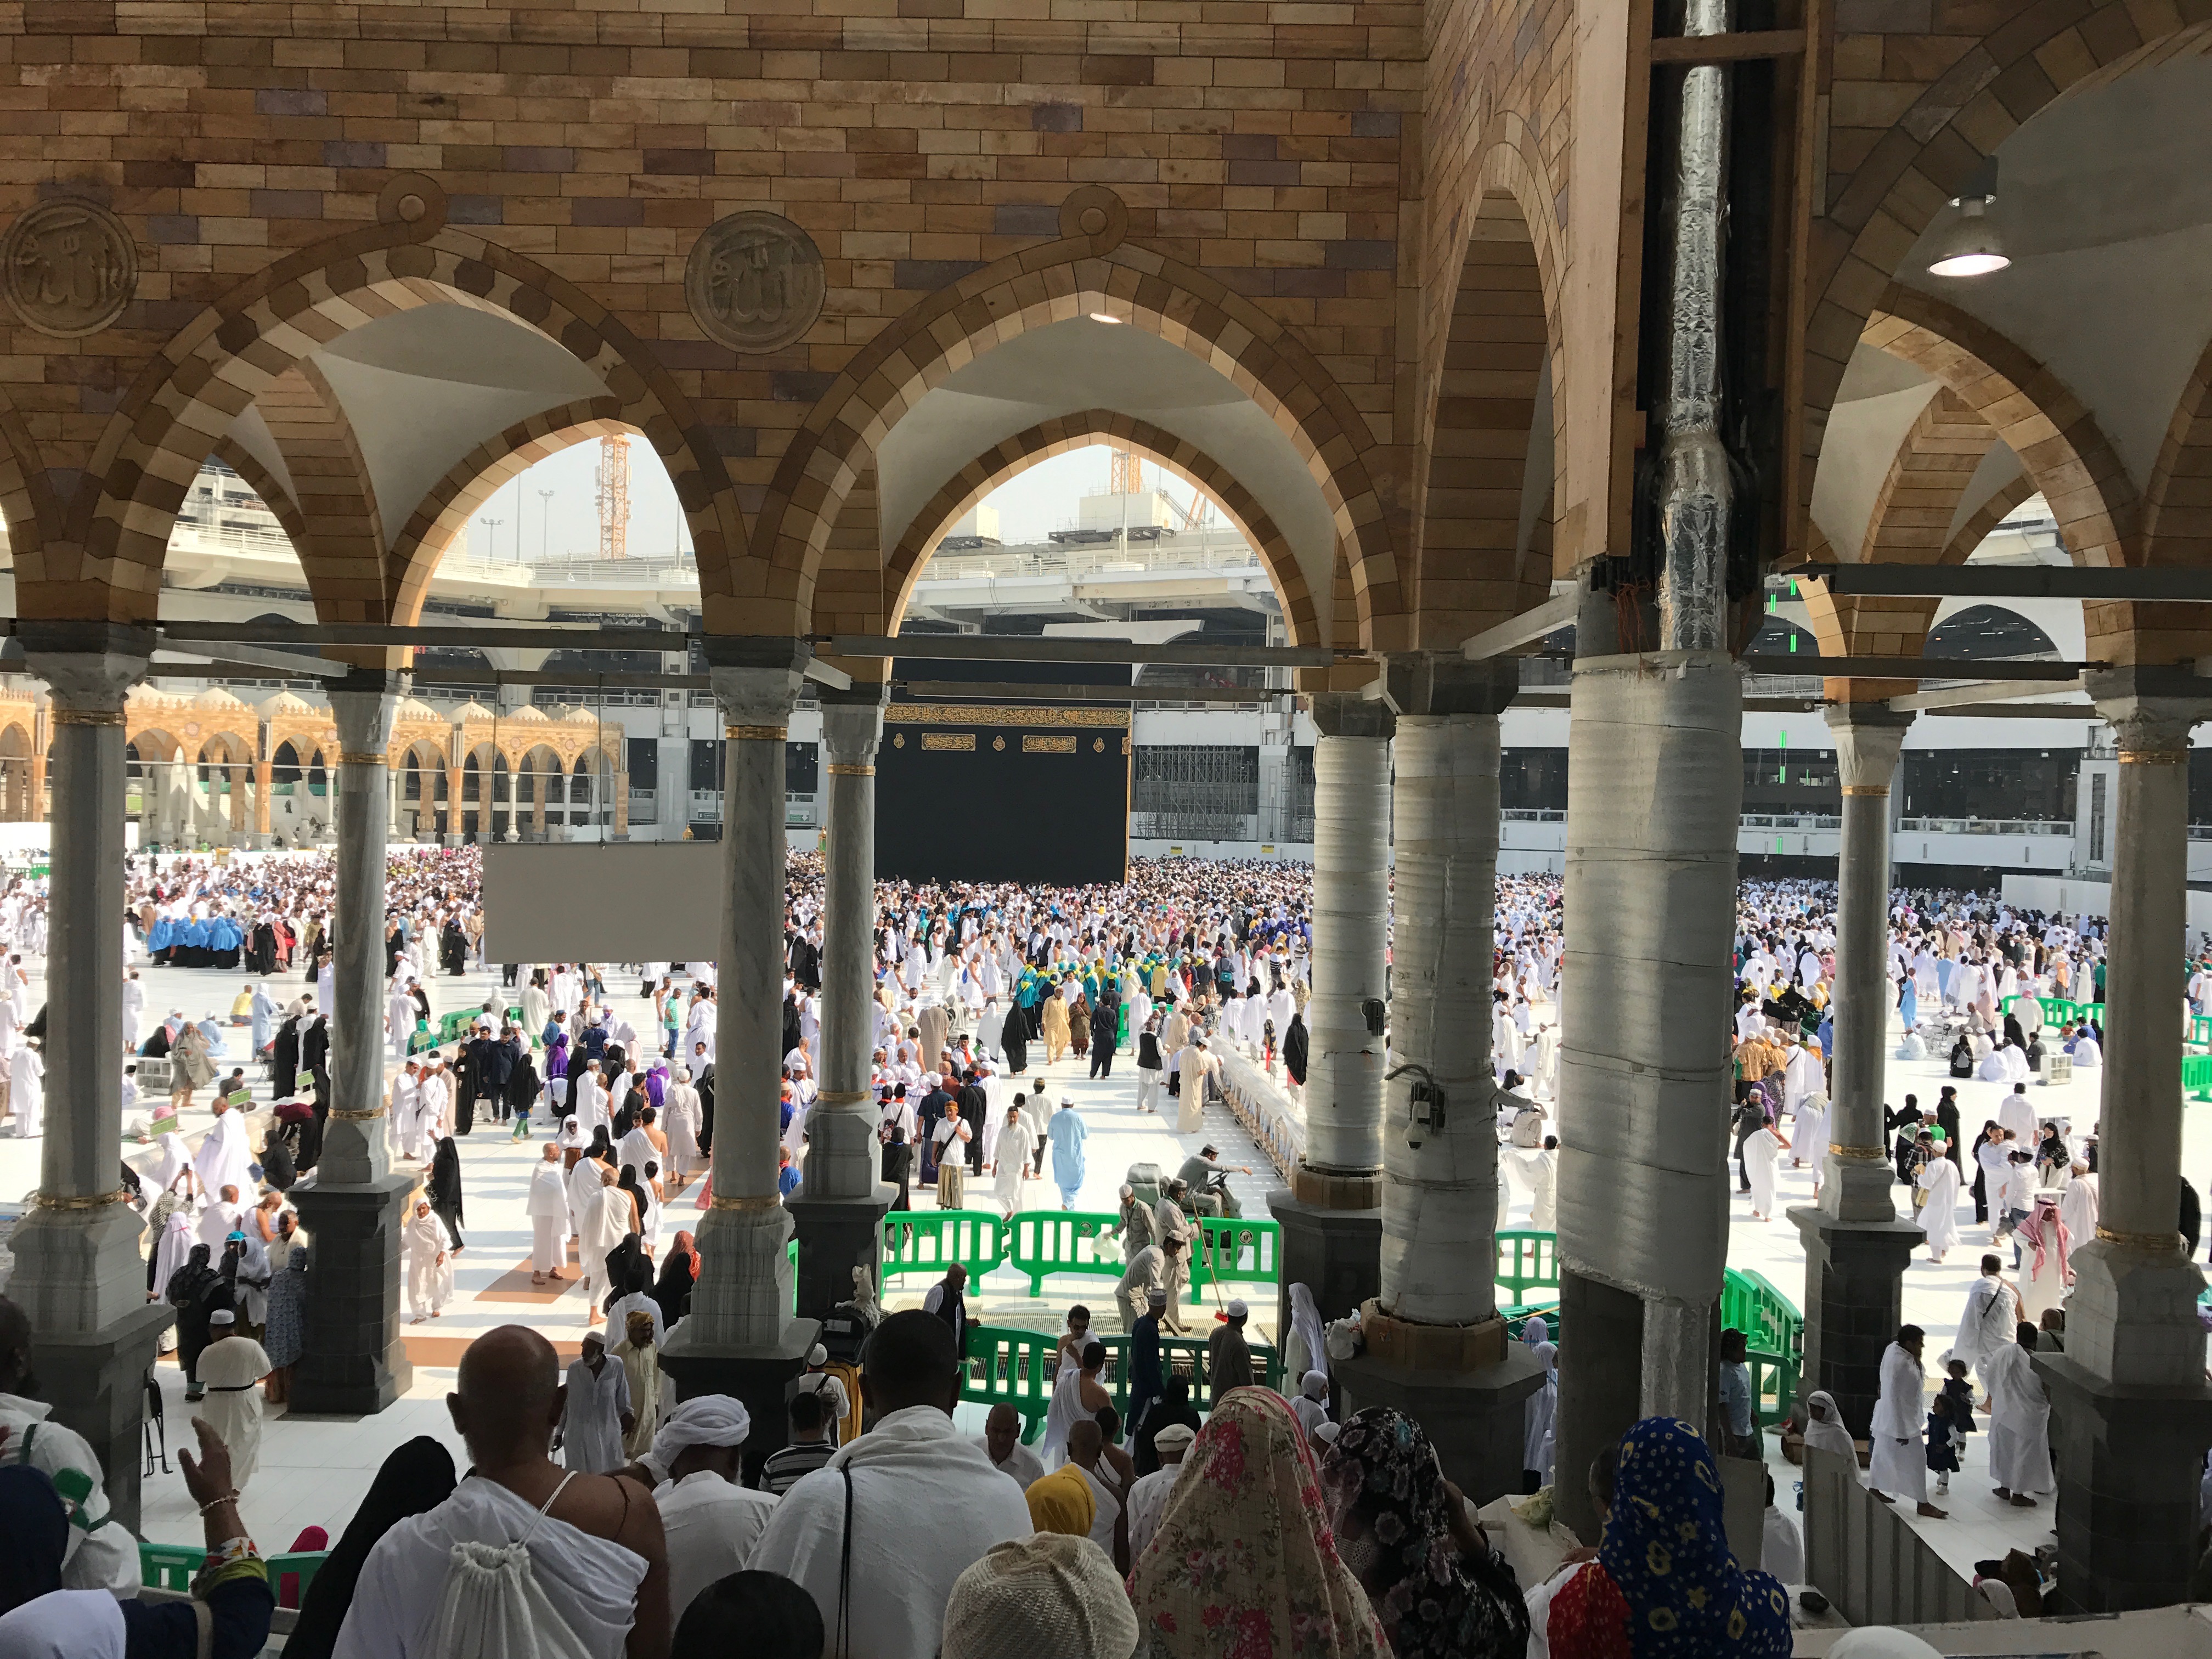 Masjid Al Haram Terrace Overlooking Kaaba in Mecca